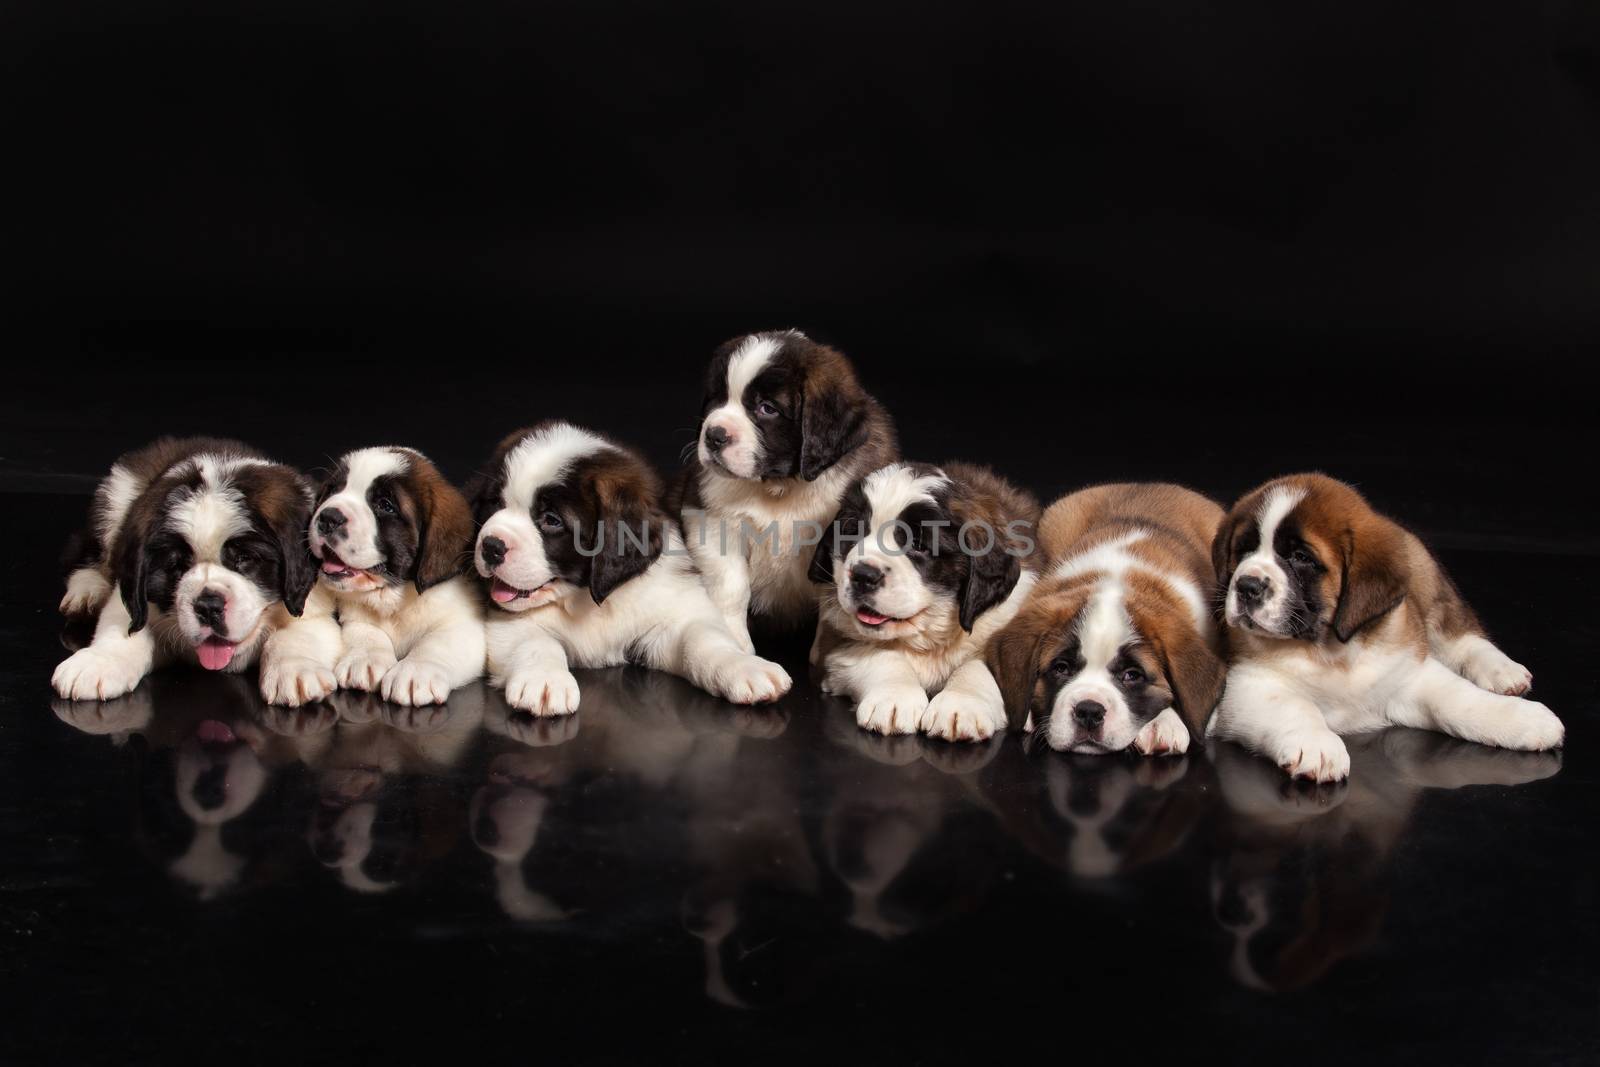 St. Bernard Puppies by Fotoskat